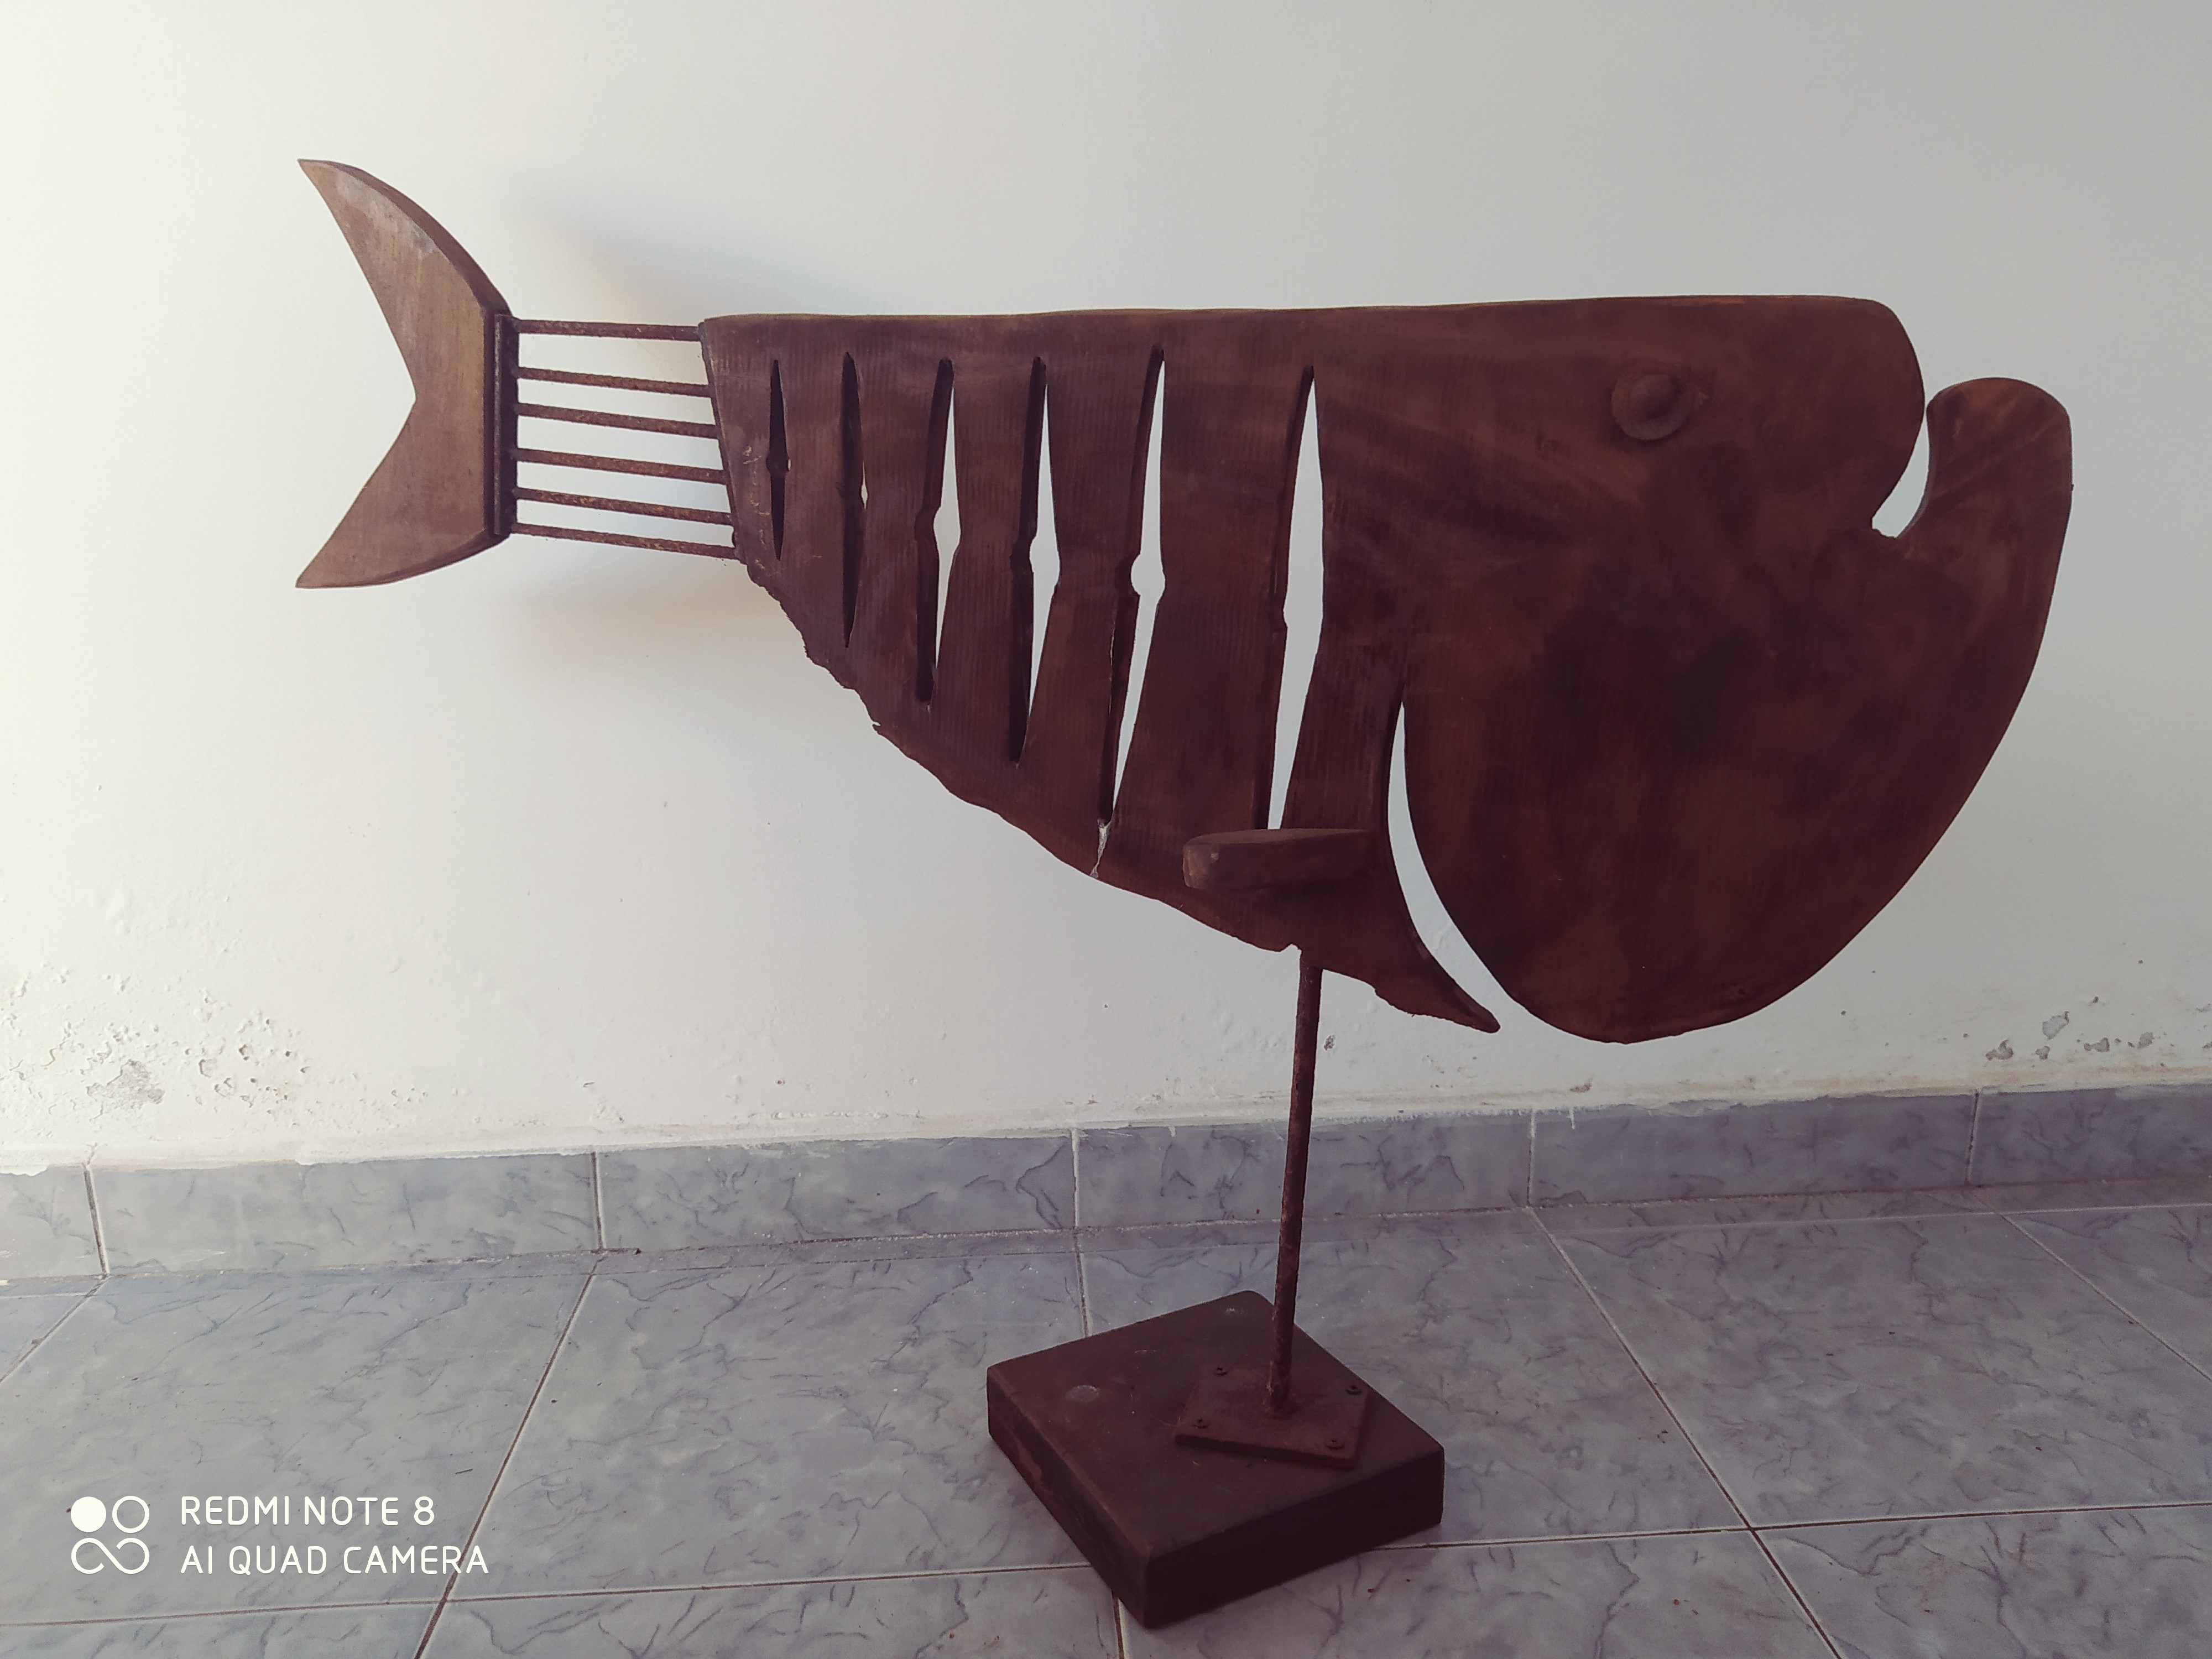 Sea Fish 1 by Chandana Gunathilake